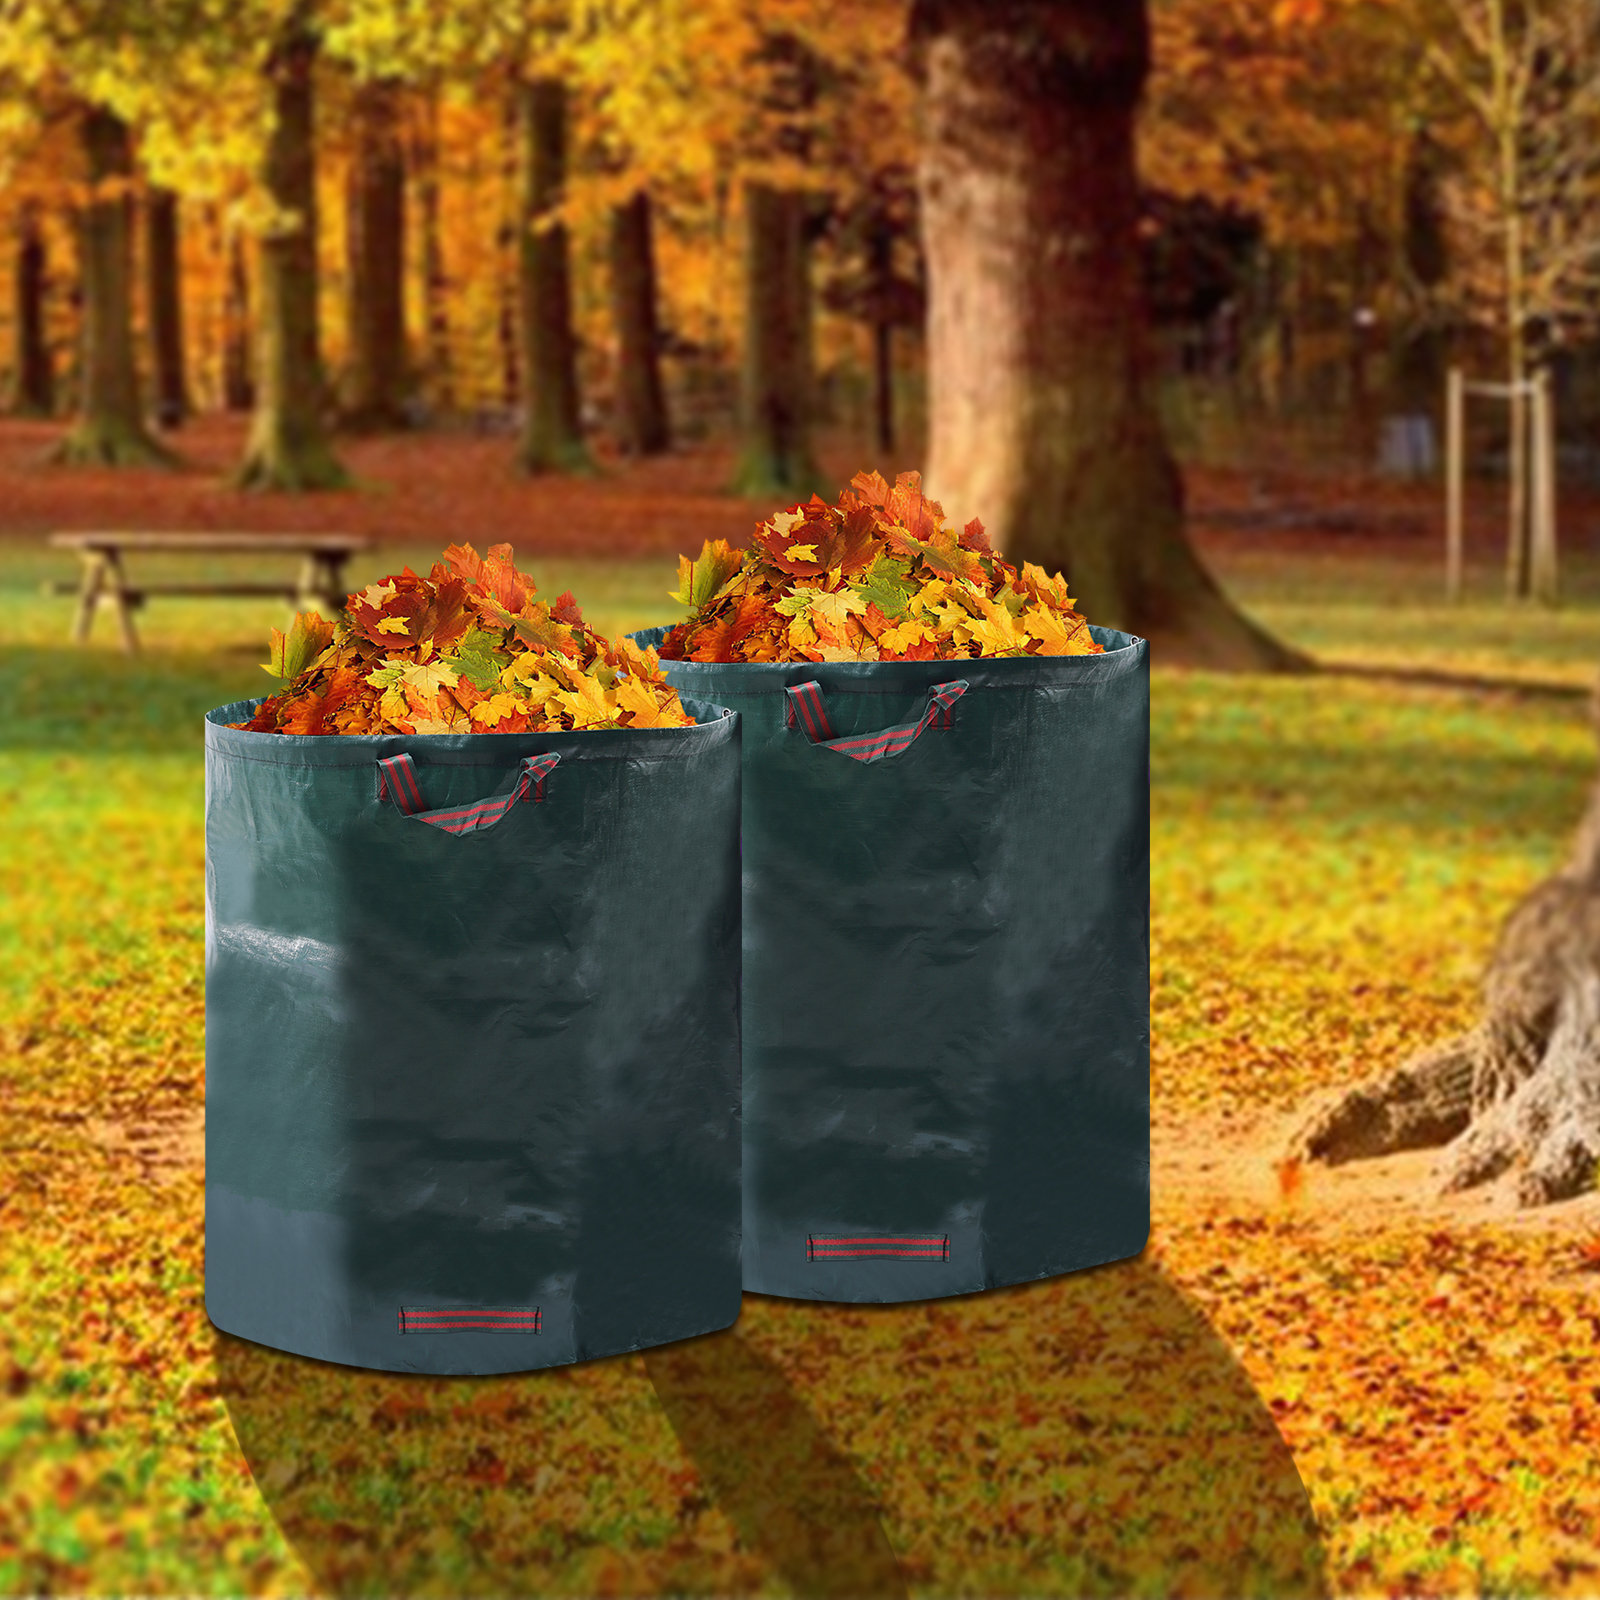 JOYDING 132 Gallon Leaf Waste Bag Extra Large Reuseable Gardening Bag Trash  Bag